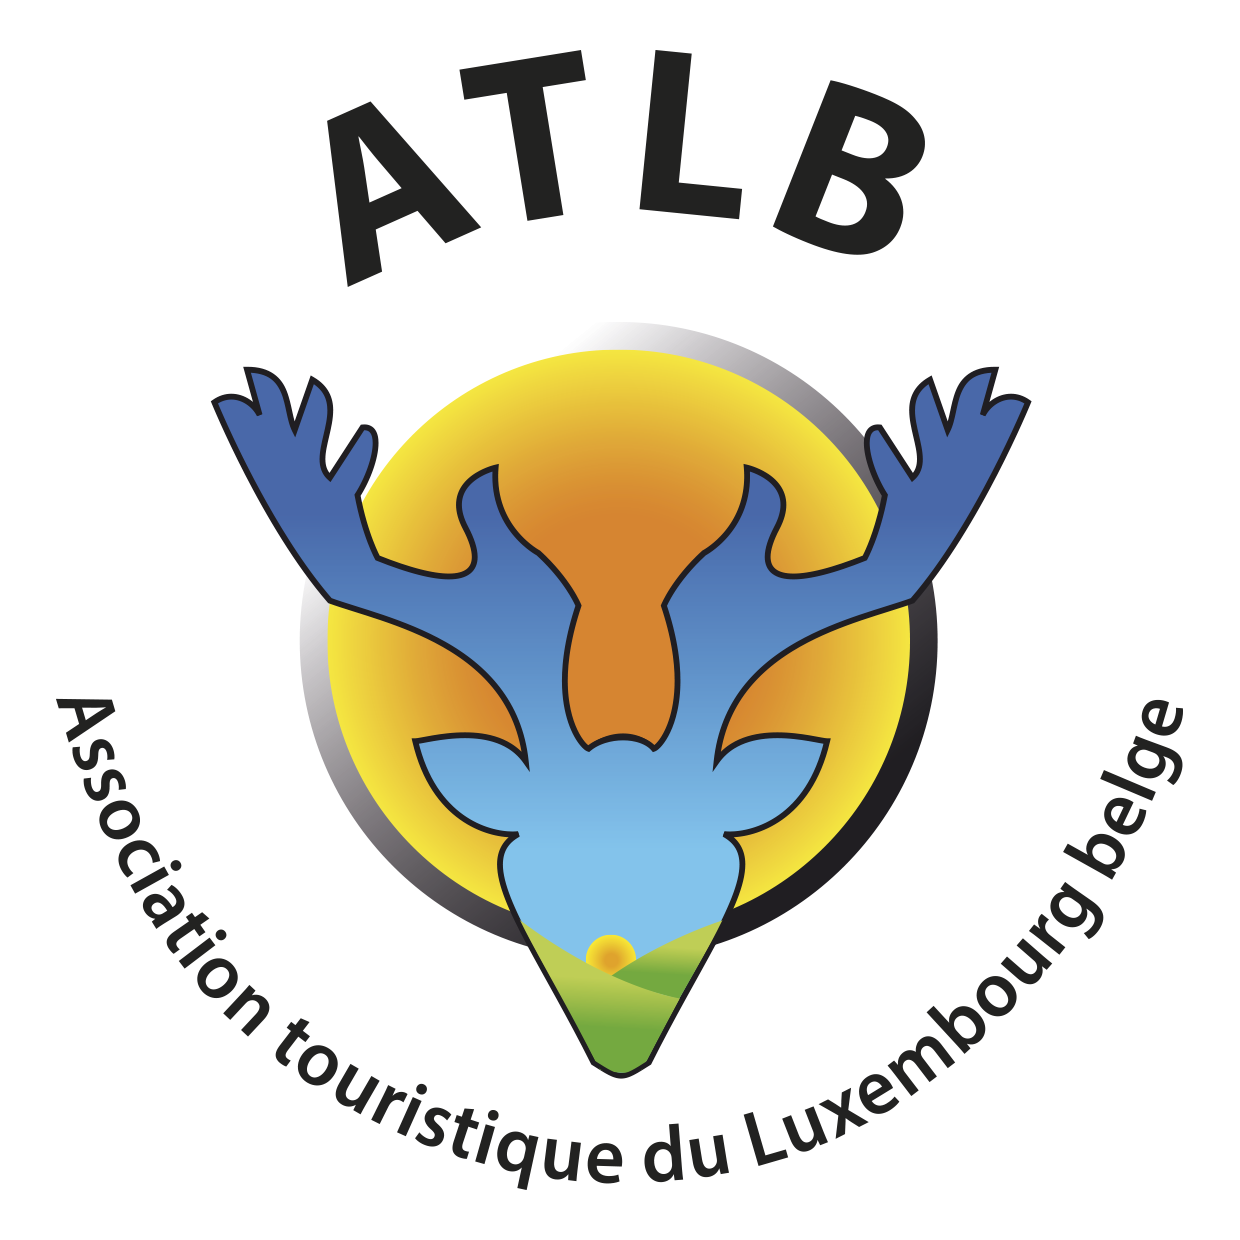 Association Touristique du Luxembourg Belge